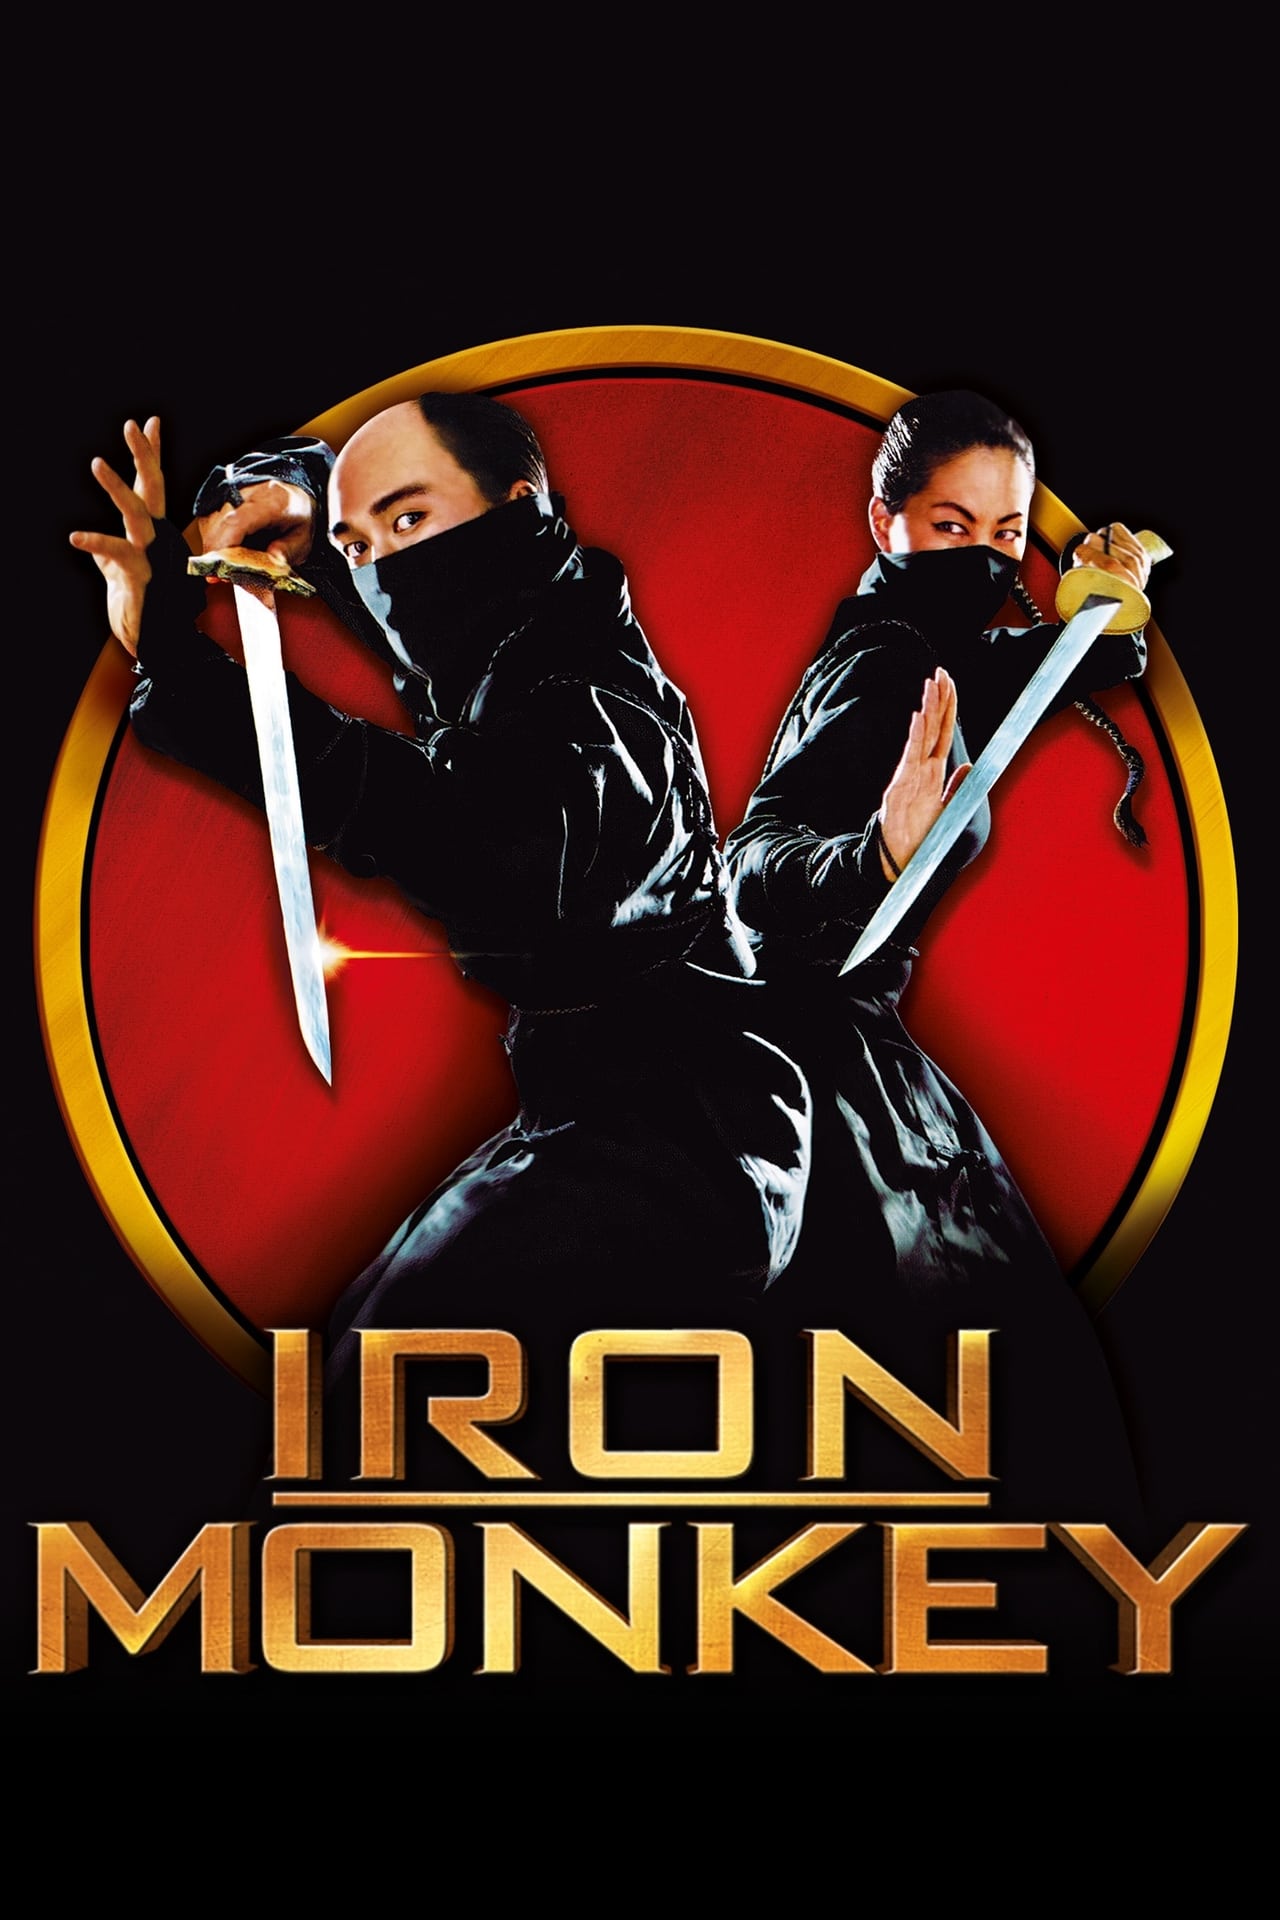 Plakát pro film “Železný opičák”